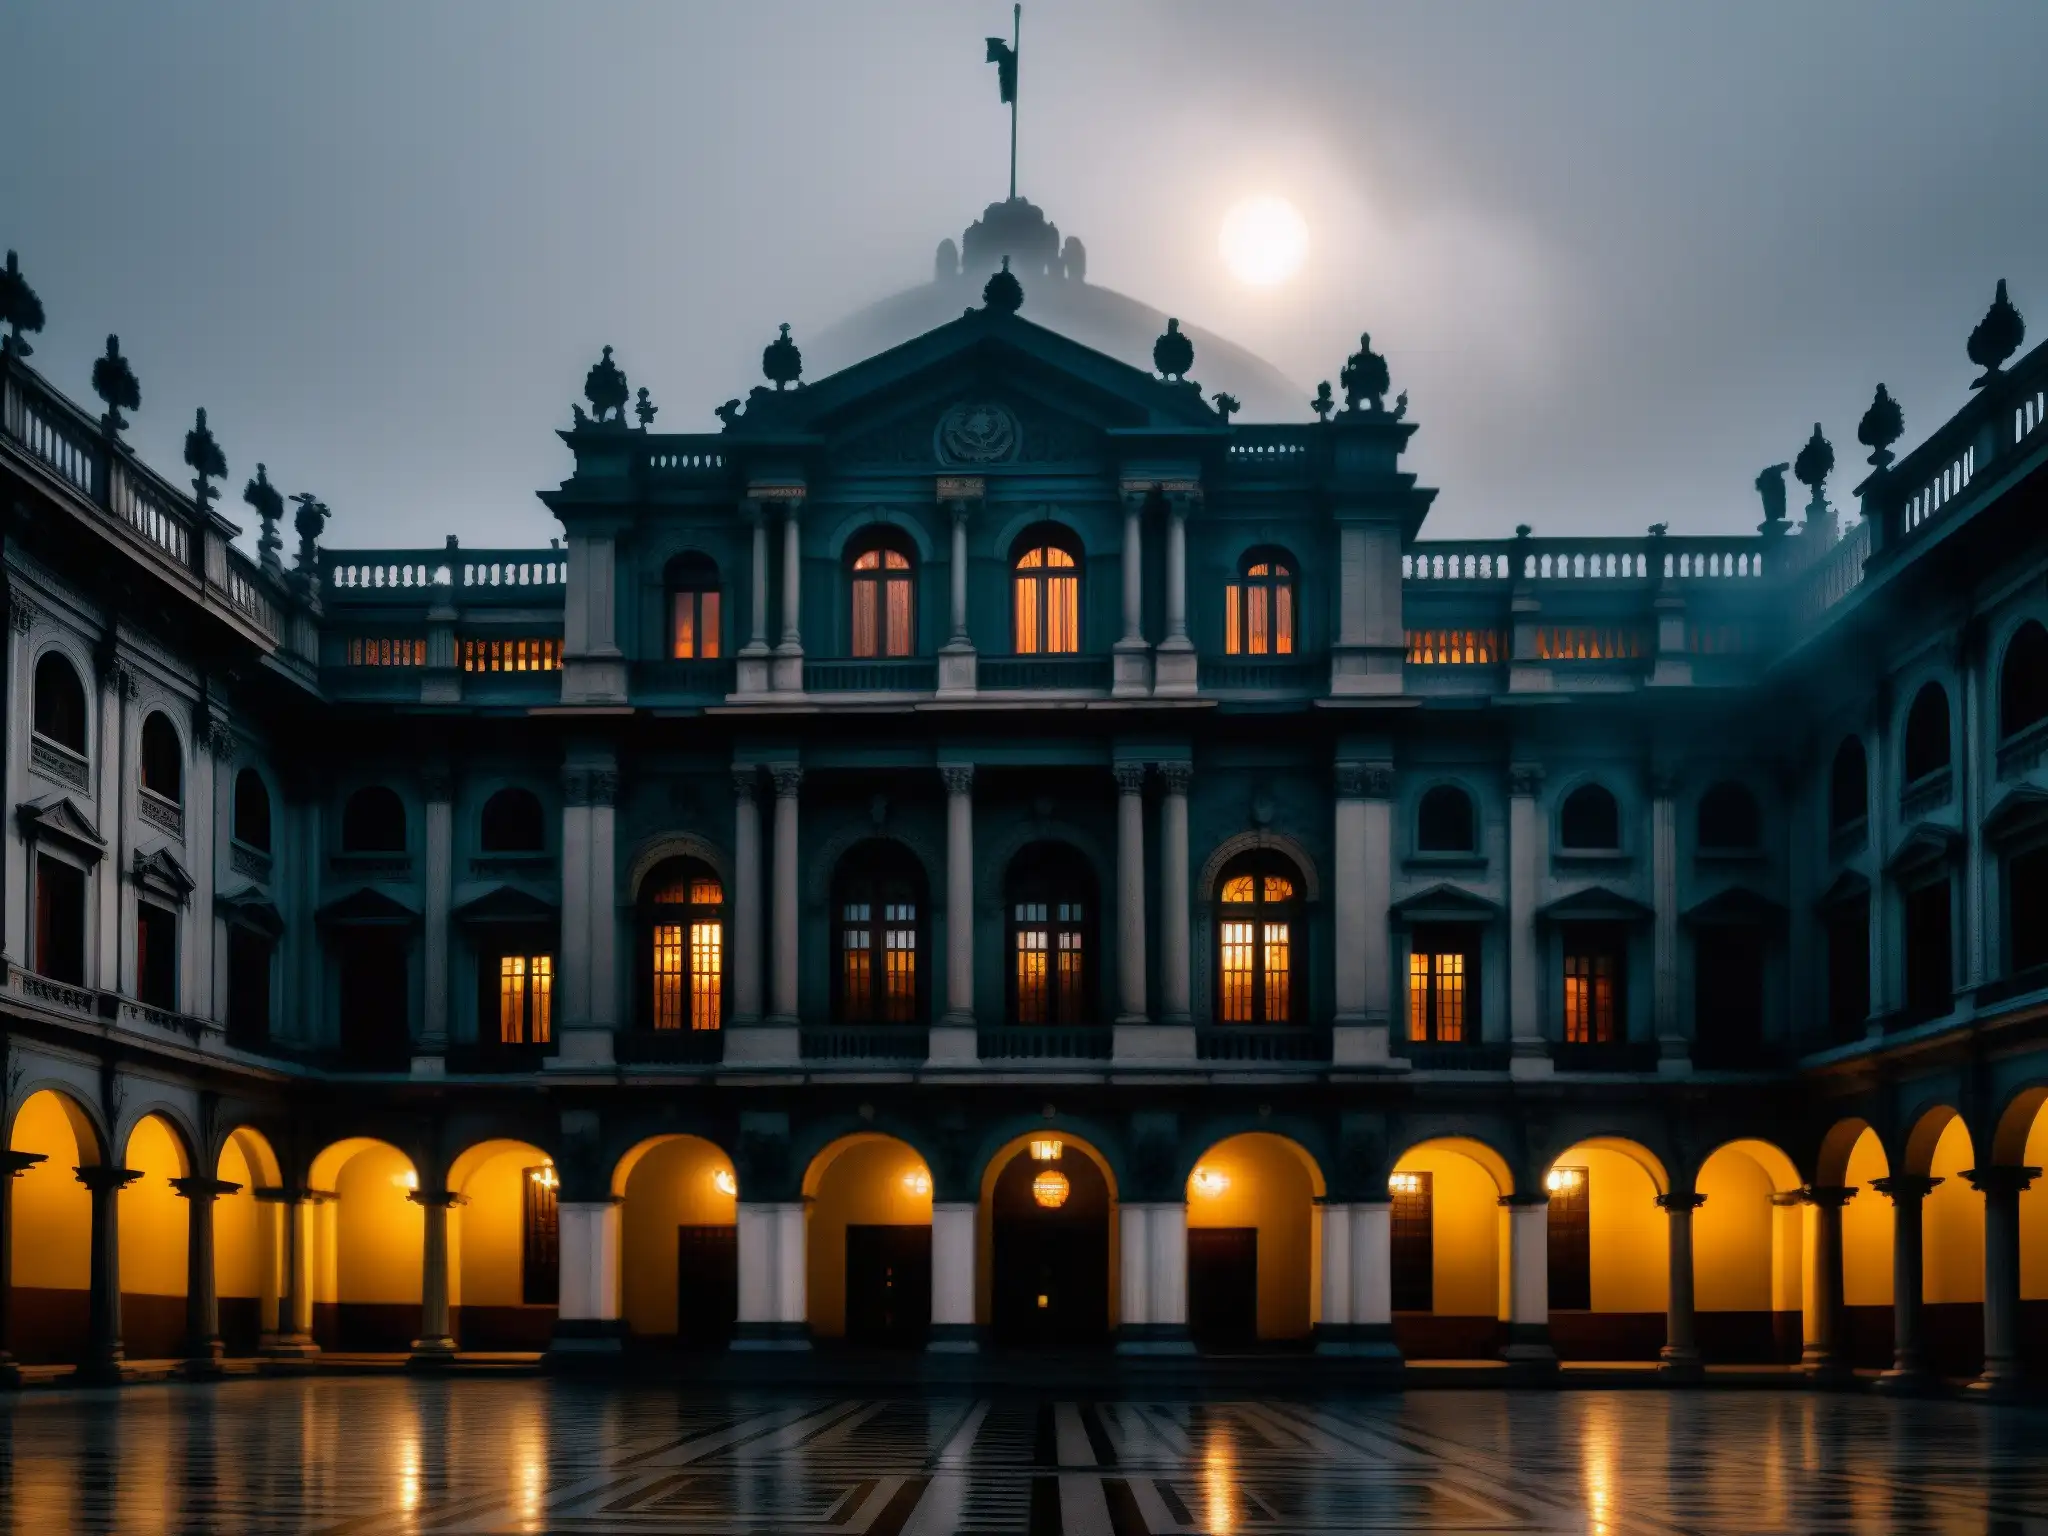 Edificio gubernamental en una ciudad latinoamericana, iluminado por una luz fantasmagórica, evocando historias sobrenaturales política latinoamericana